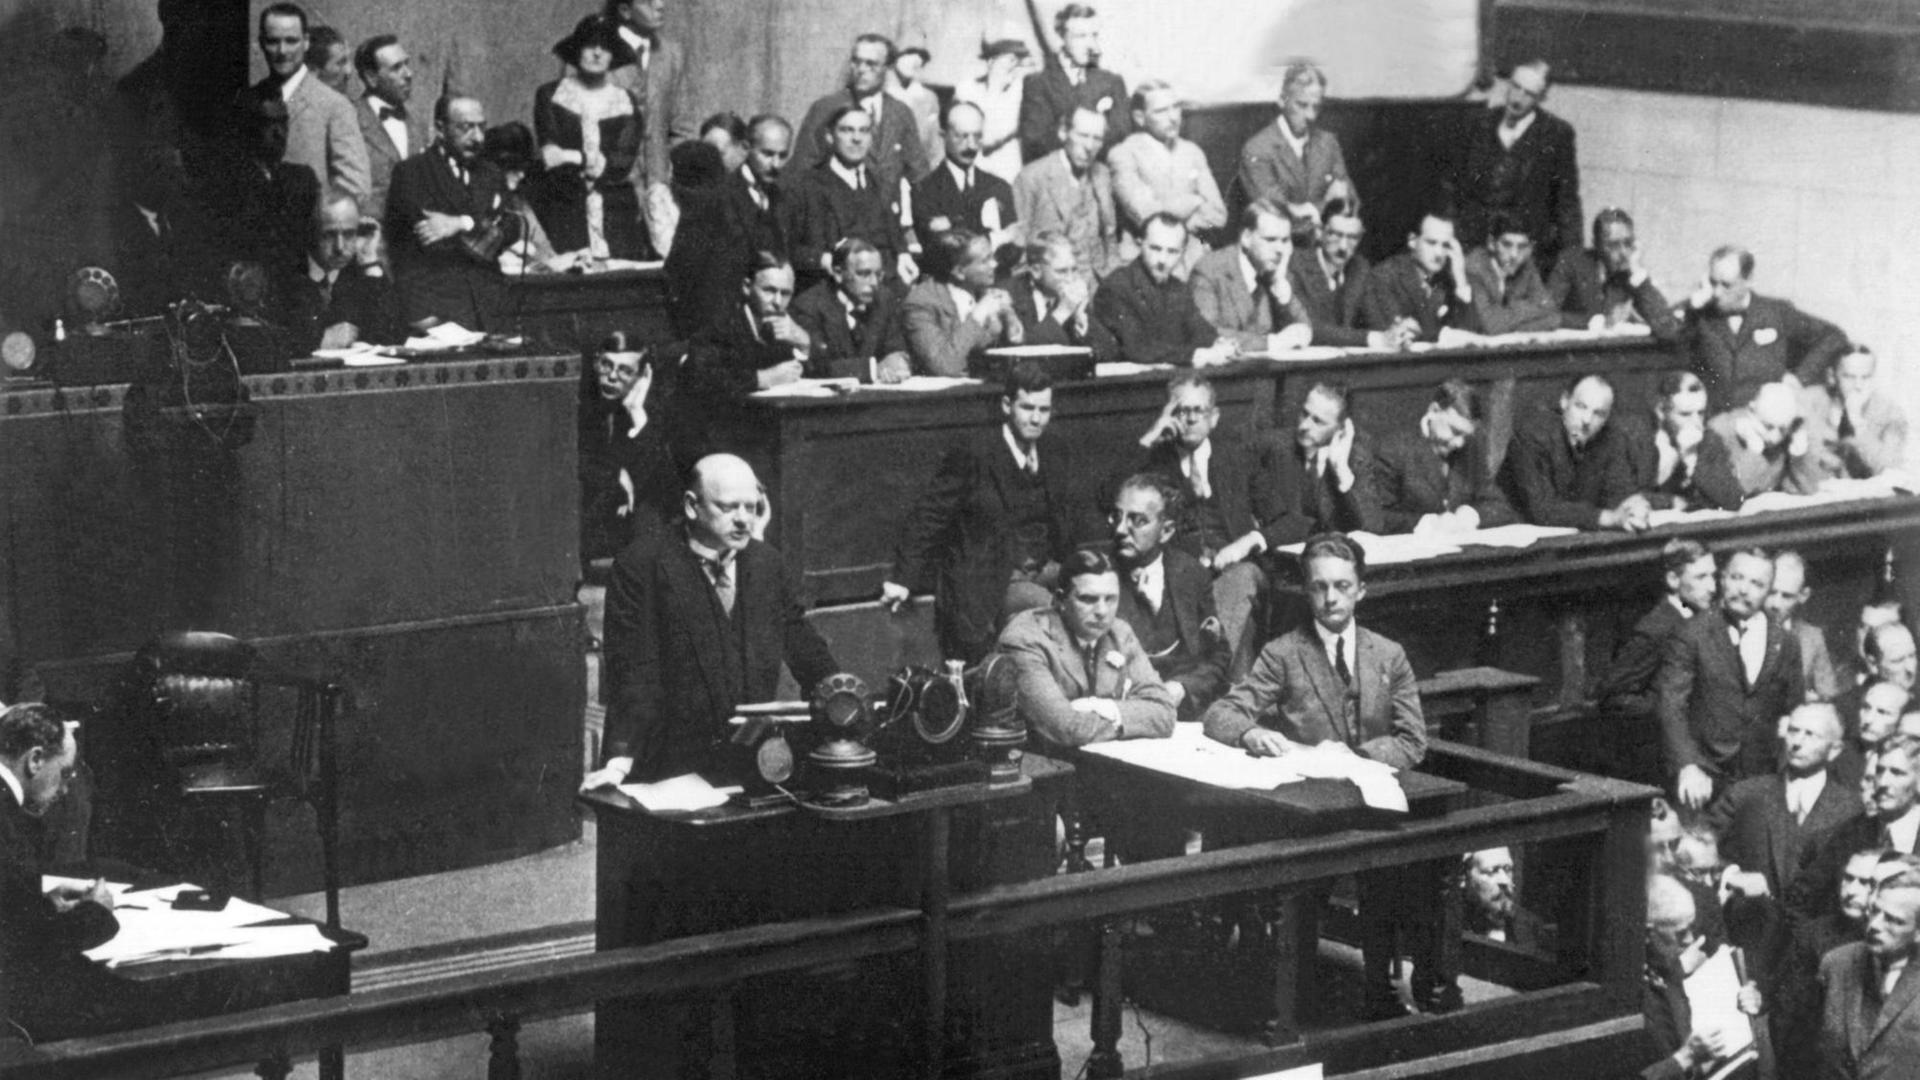 Der deutsche Politiker Dr. Gustav Stresemann (Mitte am Rednerpult) spricht vor den Mitgliedern des Völkerbundes. (undatierte Aufnahme) |